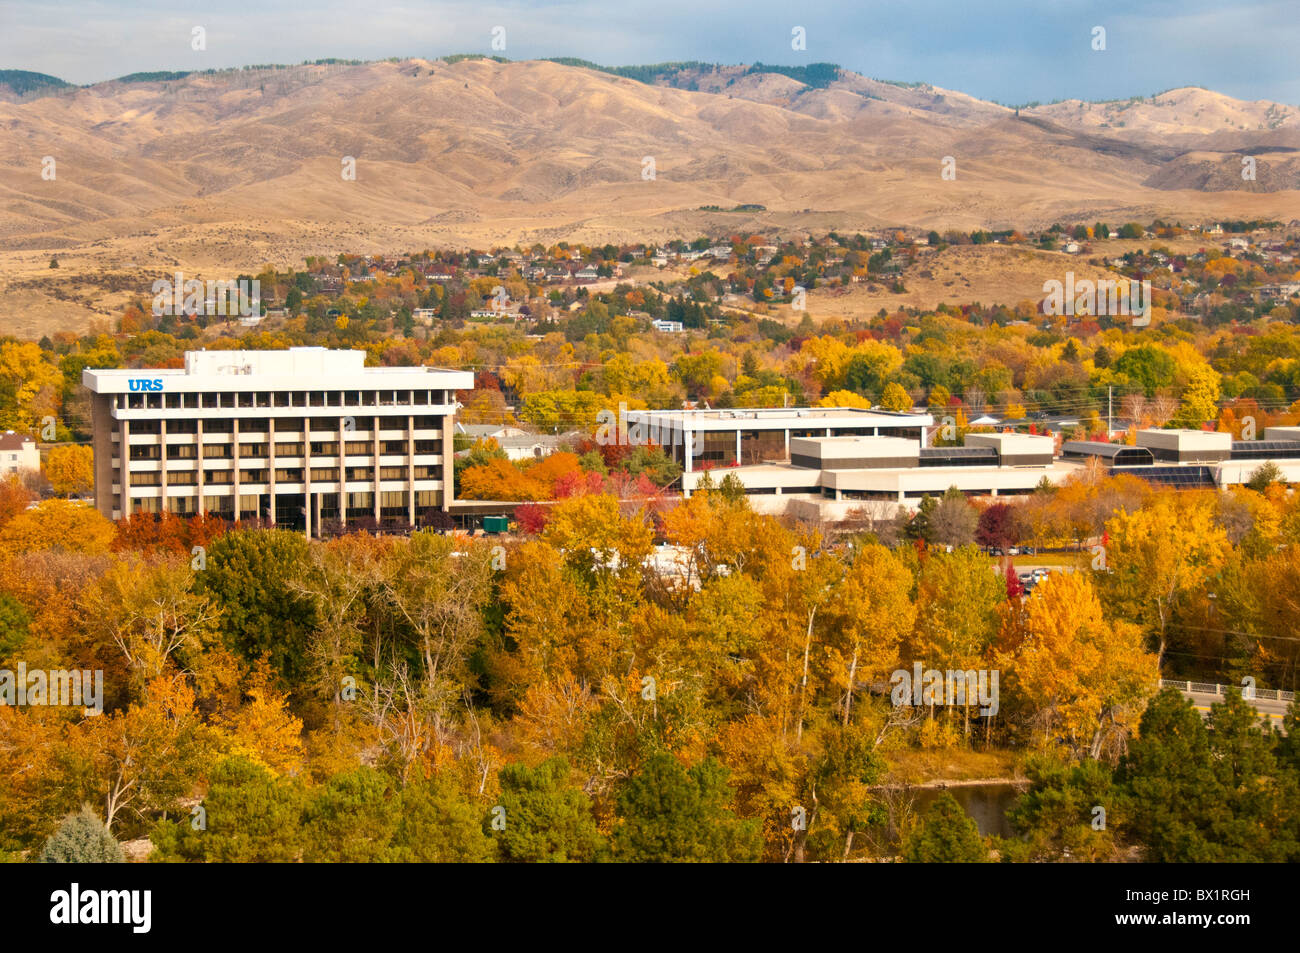 USA, Ohio, Boise, vue aérienne d'immeubles de bureaux, Holmes et couleurs d'automne de la Boise River Greenbelt. Banque D'Images